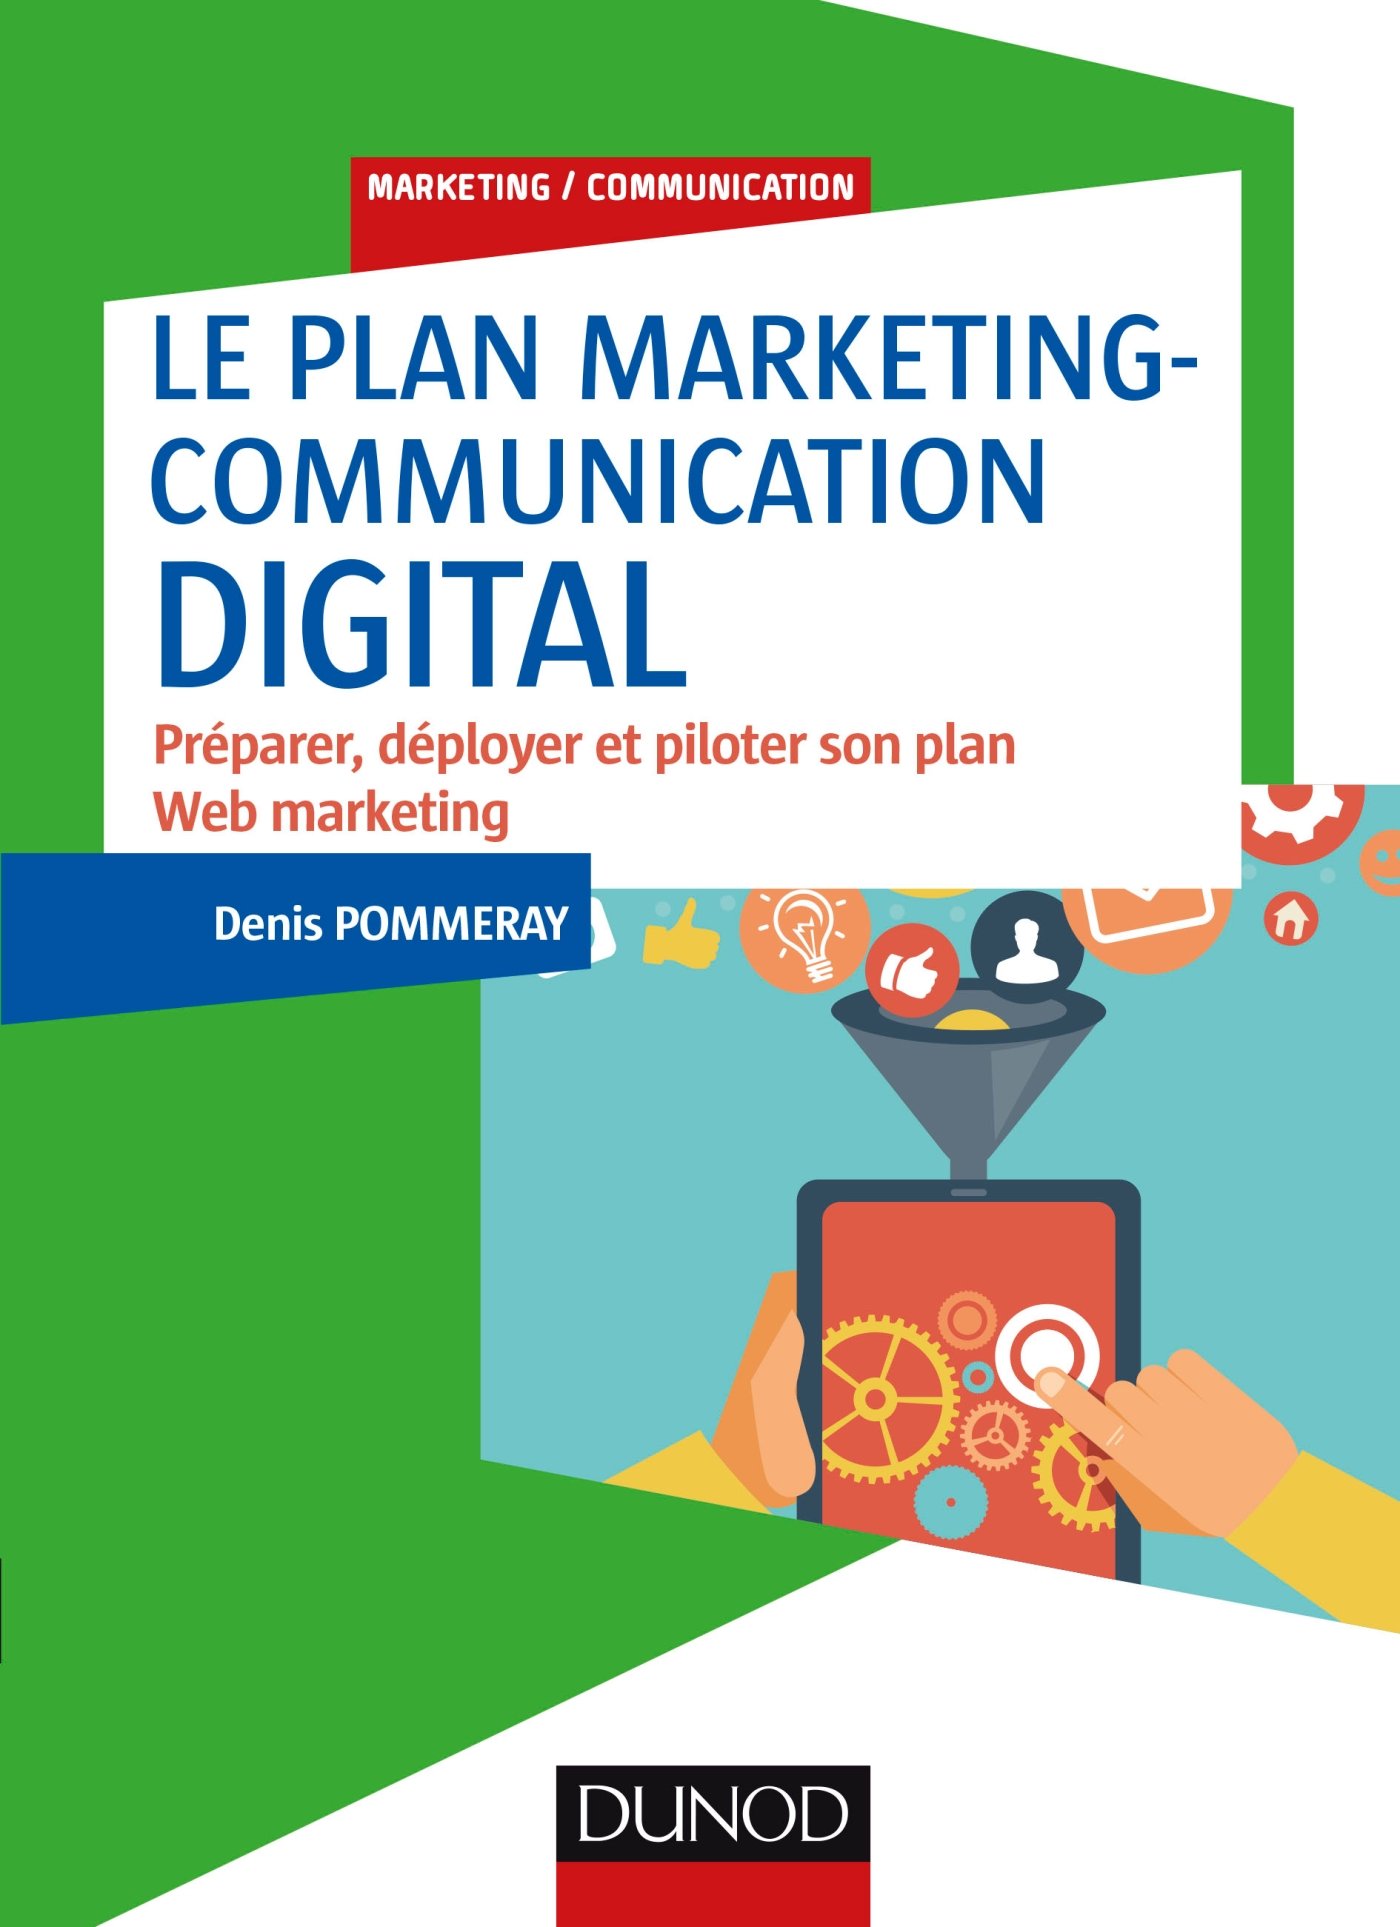 Le plan marketing-communication digital - Préparer, déployer et piloter son plan Web marketing: Préparer, déployer et piloter son plan Web marketing